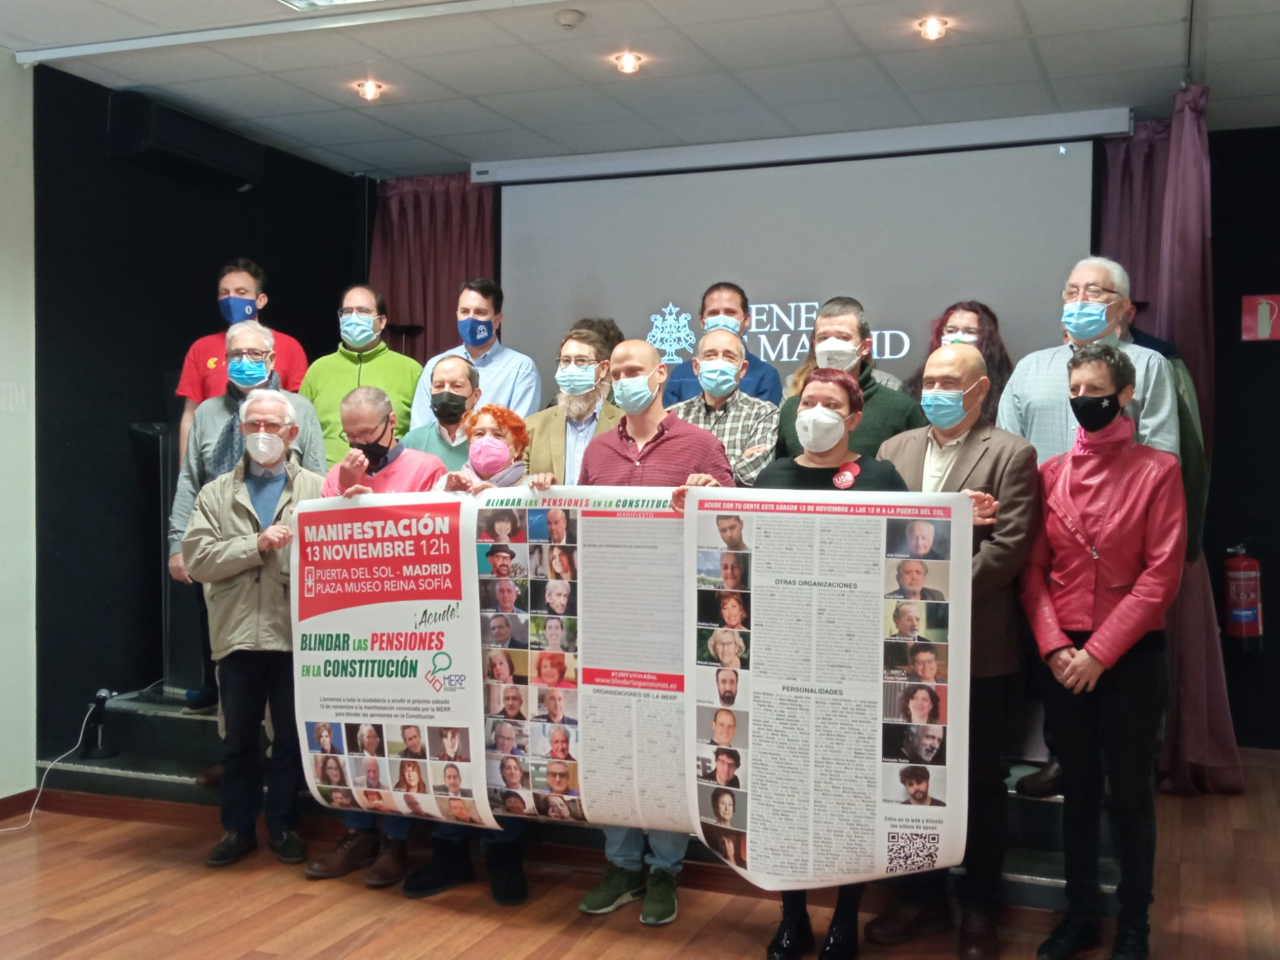 La MERP llama a toda la ciudadanía a acudir el próximo sábado 13 de noviembre a Madrid para blindar las pensiones